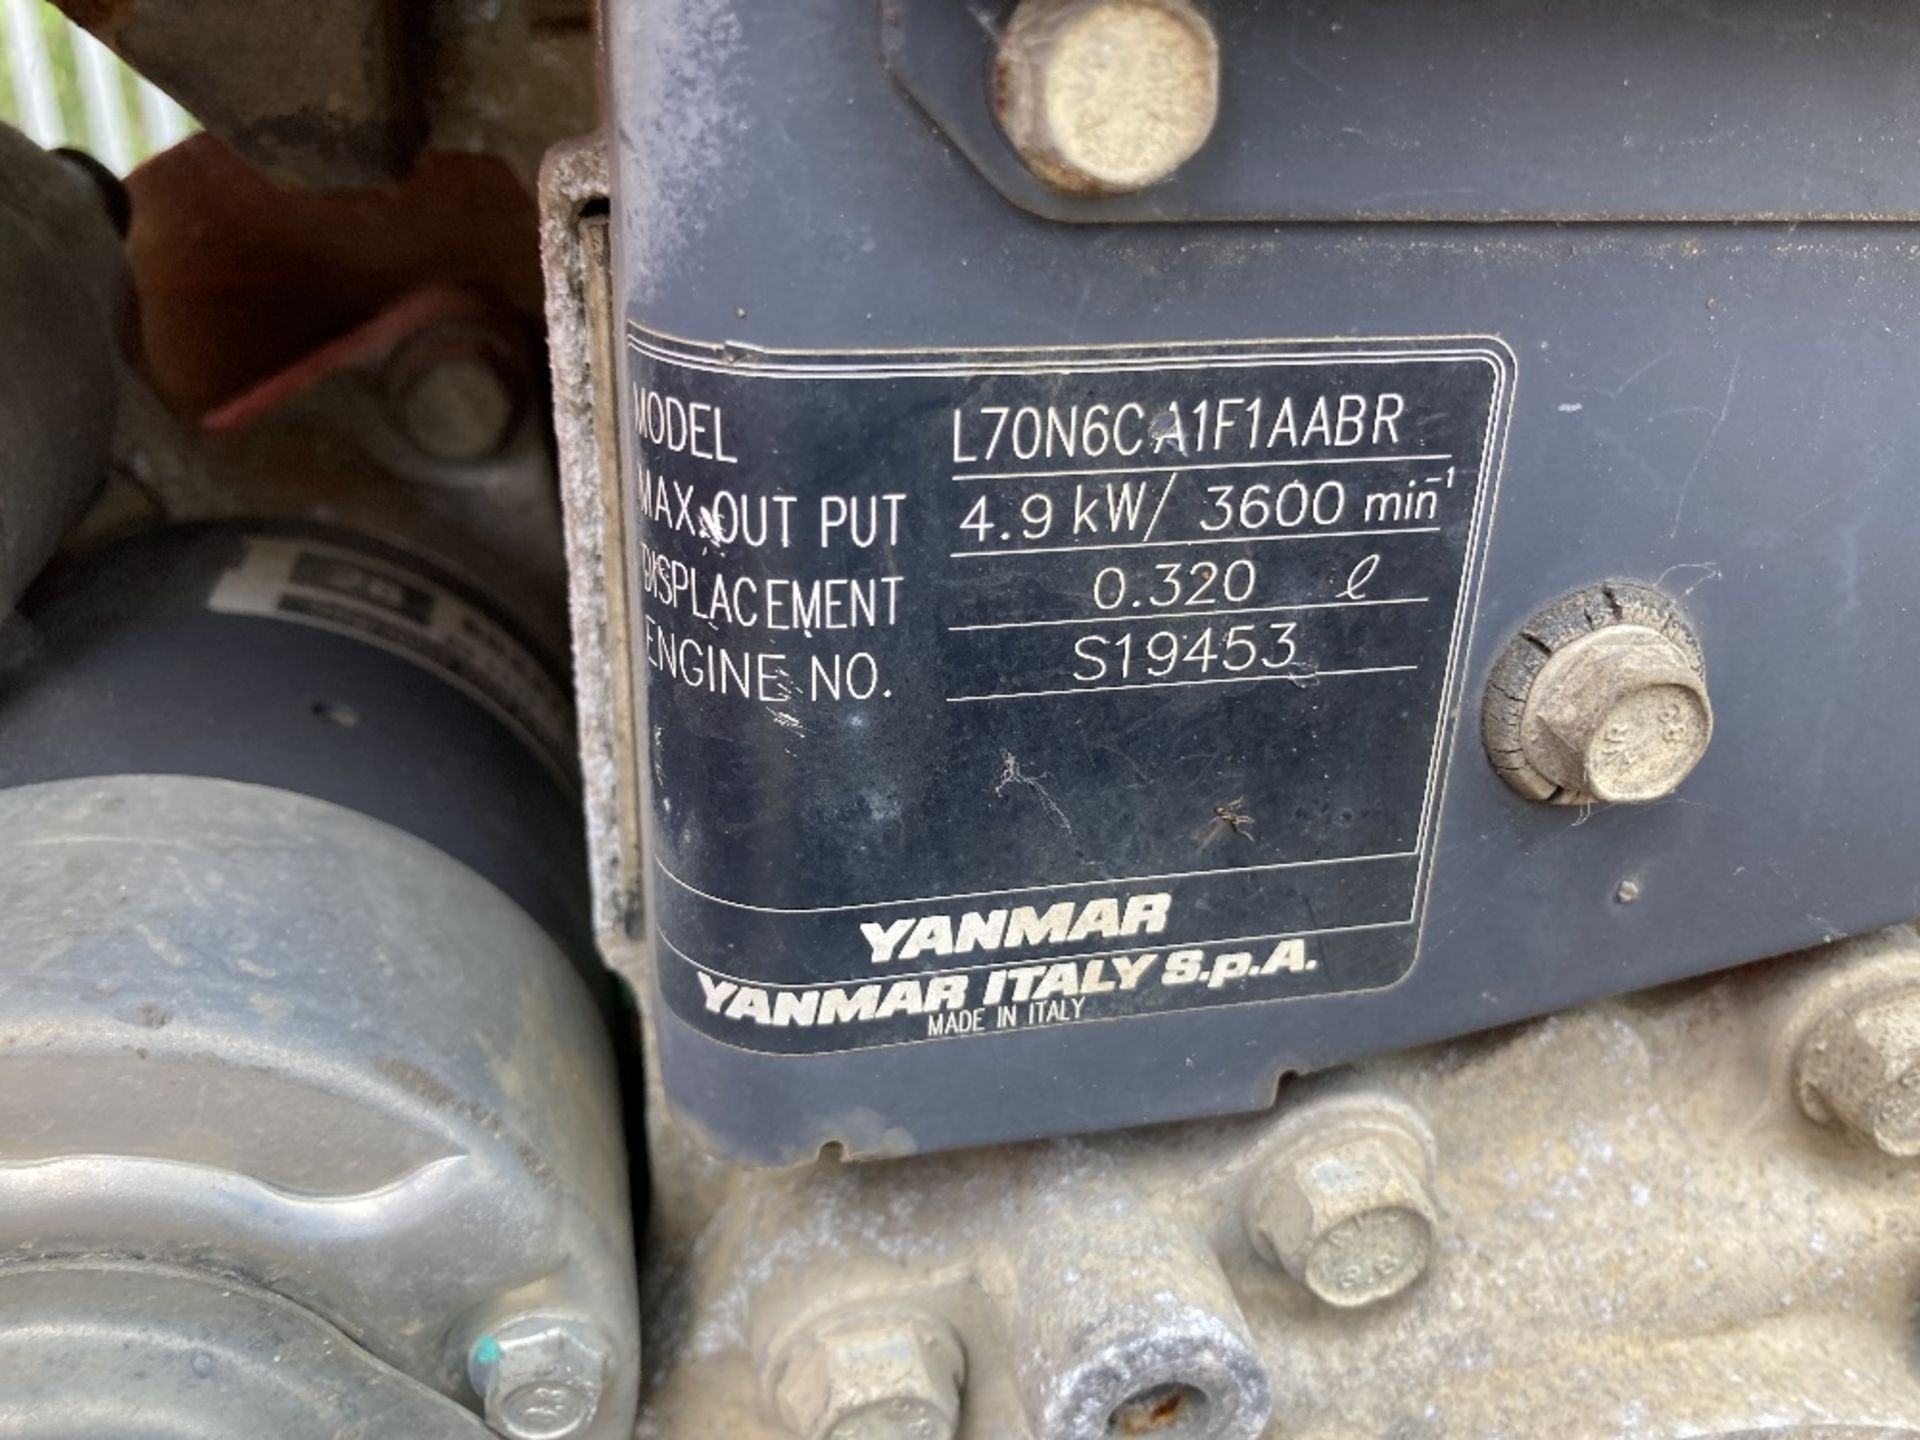 Taskman diesel powered towable pressure washer - Image 13 of 18